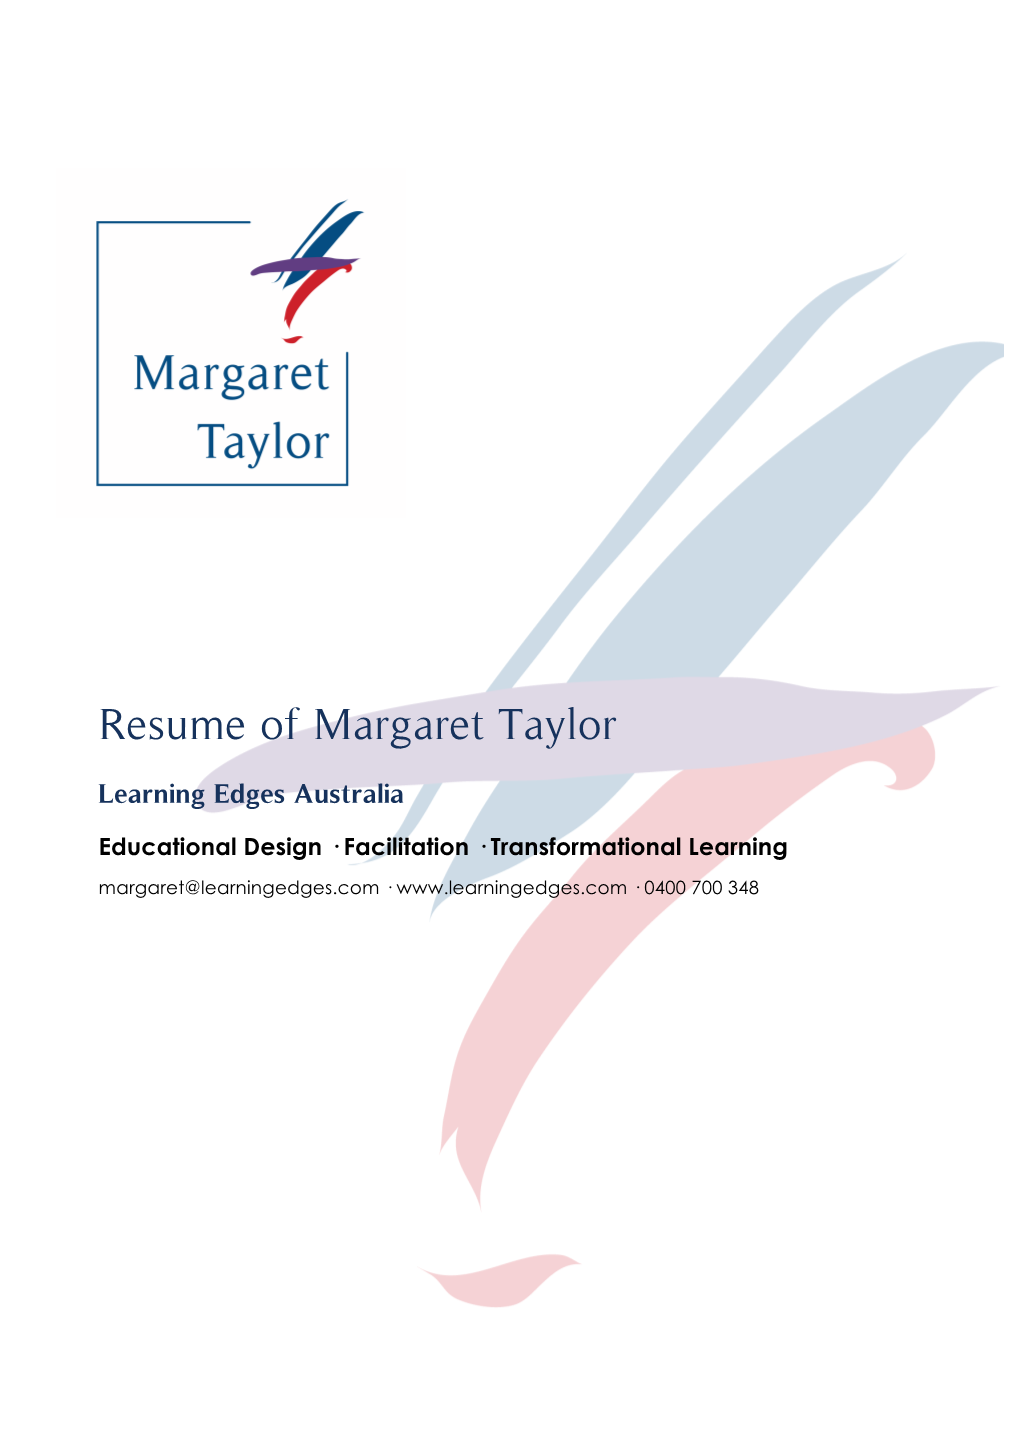 Resume of Margaret Taylor